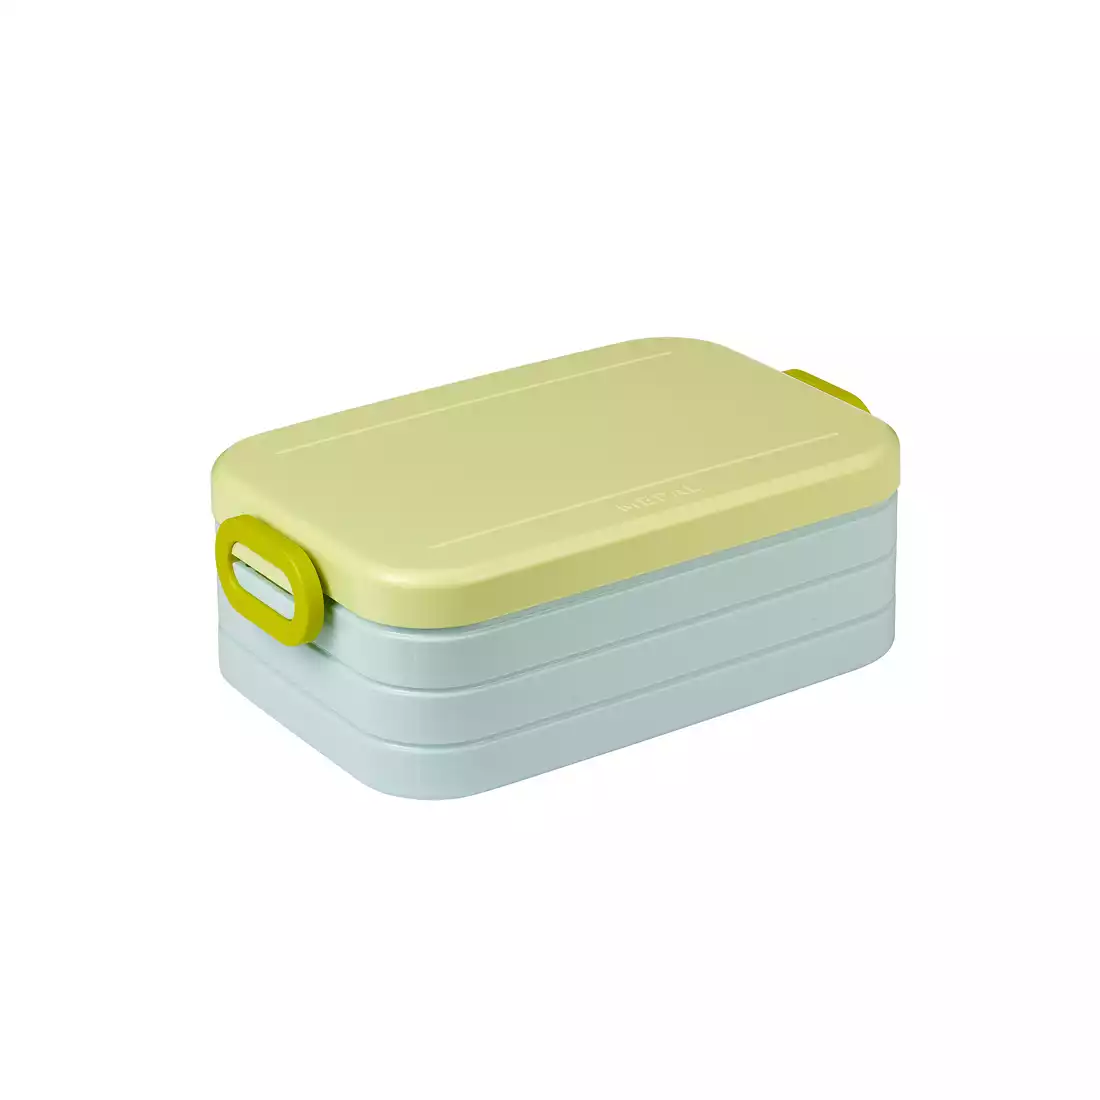 Mepal Take a Break Bento midi Lemon Vibe lunchbox, miętowo-żółty